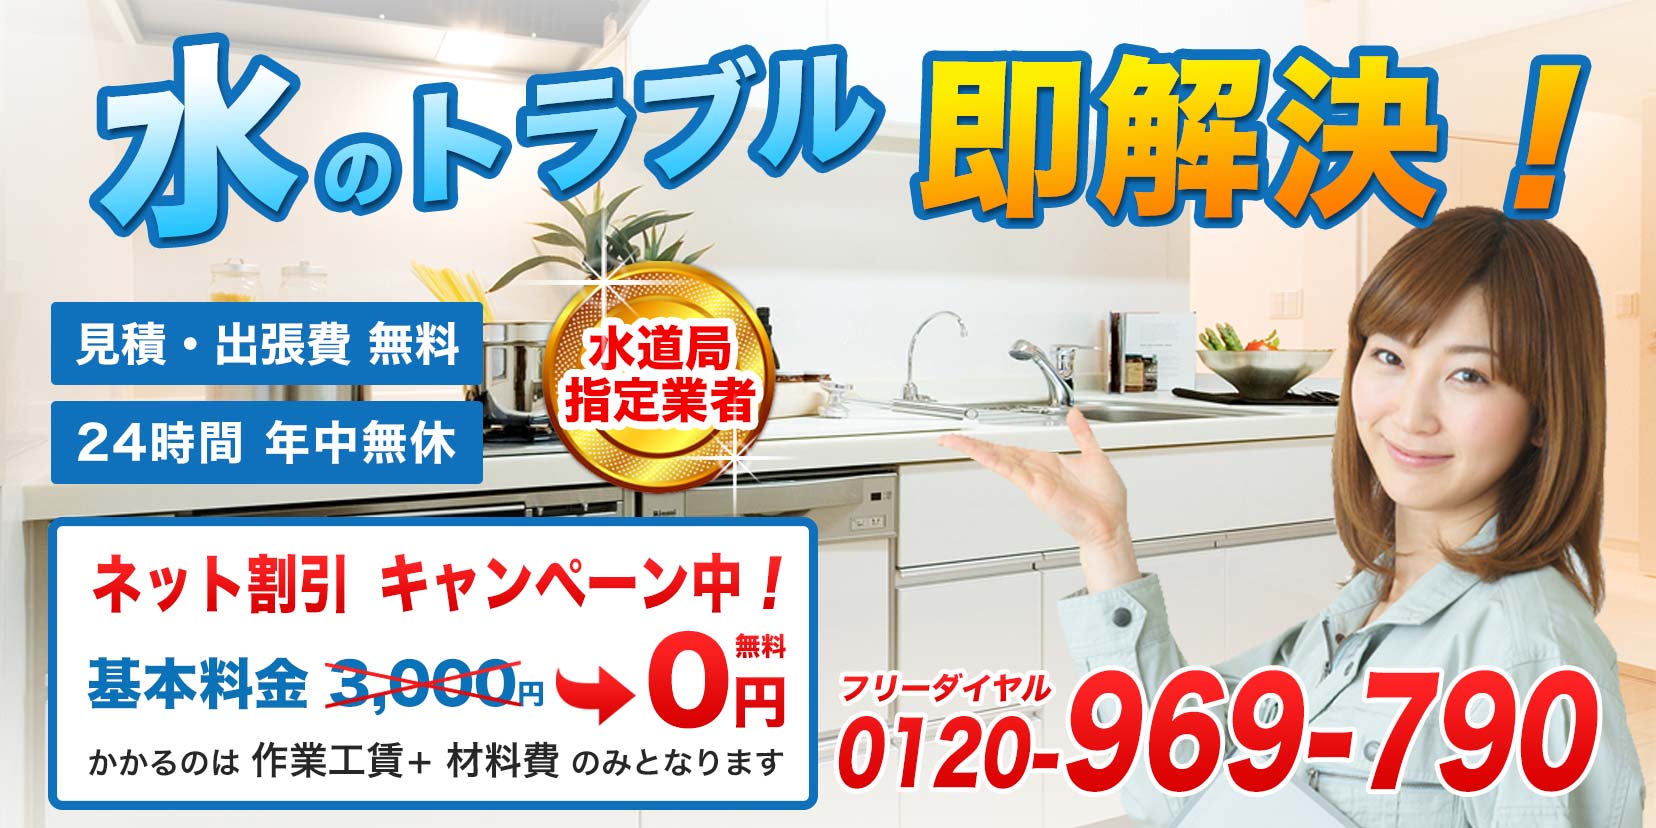 大阪のトイレつまり修理